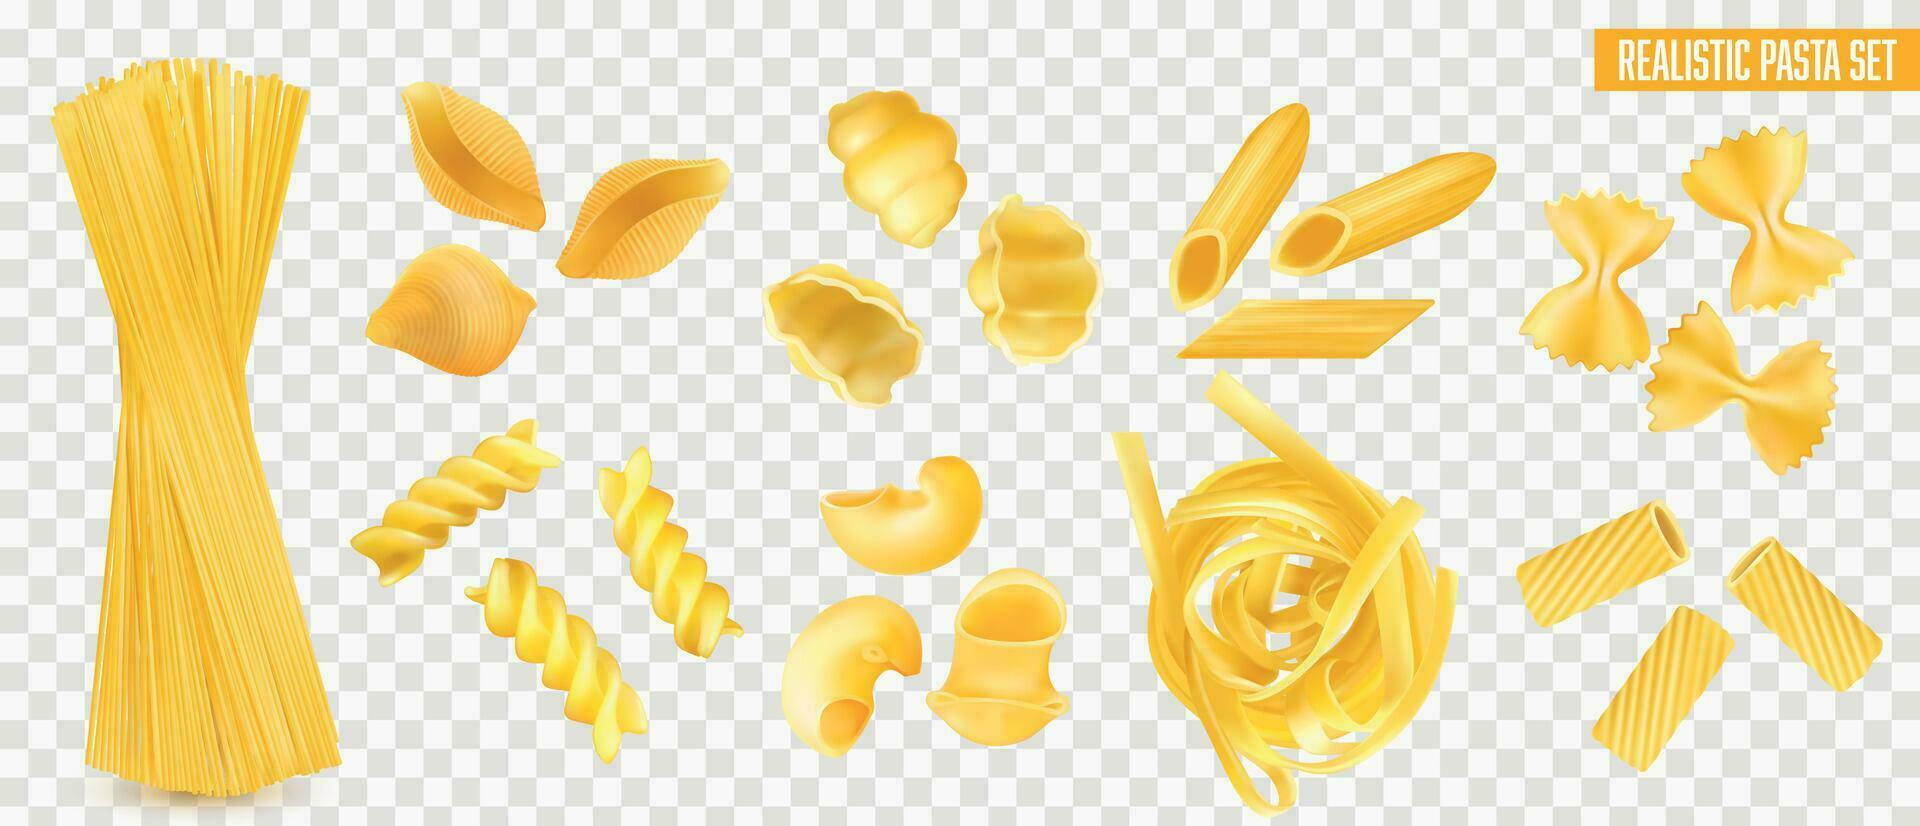 Realistic Pasta Set vector